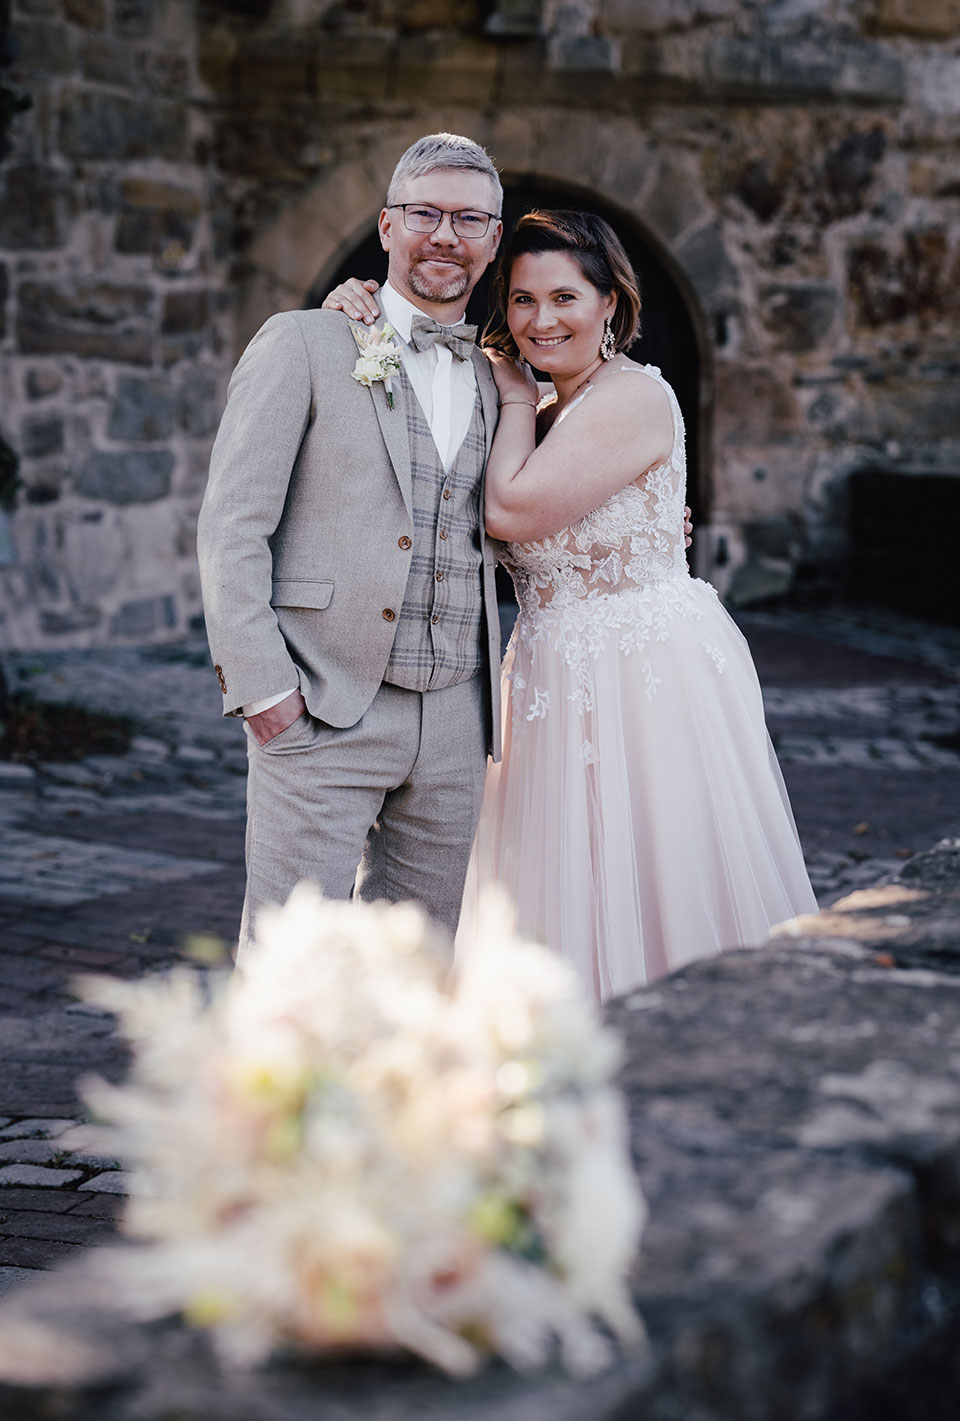 Brautpaar in eleganter Hochzeitskleidung vor einer alten Steinmauer, mit einem unscharfen Blumenstrauß im Vordergrund.